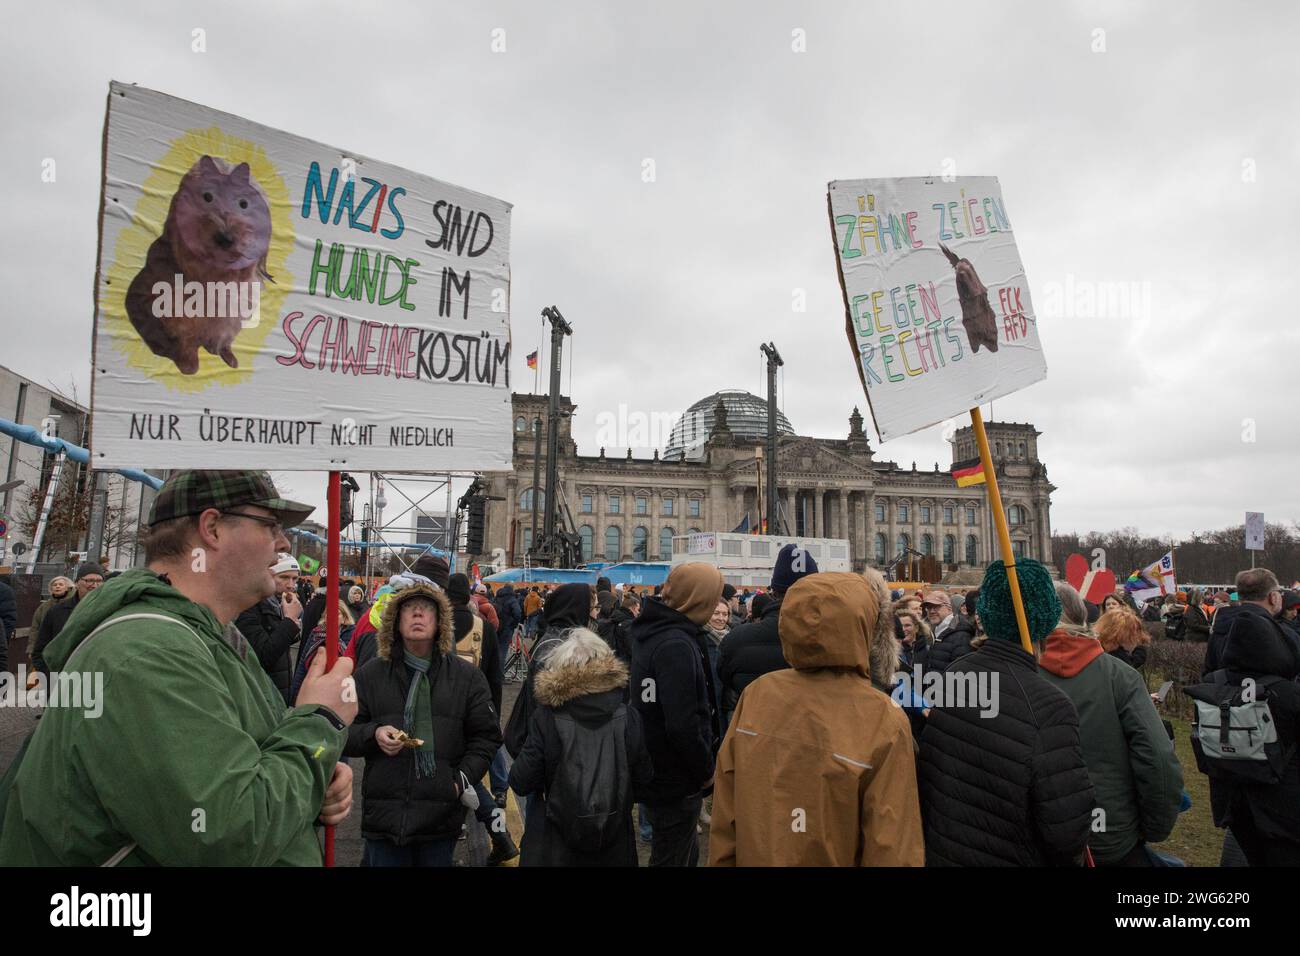 Berlino fu testimone di un monumentale raduno il 3 febbraio 2024, quando circa 300.000 manifestanti formarono un simbolico "firewall" contro l'estremismo di destra davanti al Bundestag sotto la bandiera WeAreTheFirewall. Questa massiccia mobilitazione risponde ai crescenti sentimenti di destra e alle violazioni dei diritti umani all'interno della società e della politica, sostenendo una maggiore tolleranza e una democrazia solida. Il raduno è stato organizzato dalla rete "mano in mano", che ha visto oltre 1.700 organizzazioni firmare una dichiarazione contro l'estremismo di destra, mostrando un fronte unito da un ampio spettro Foto Stock